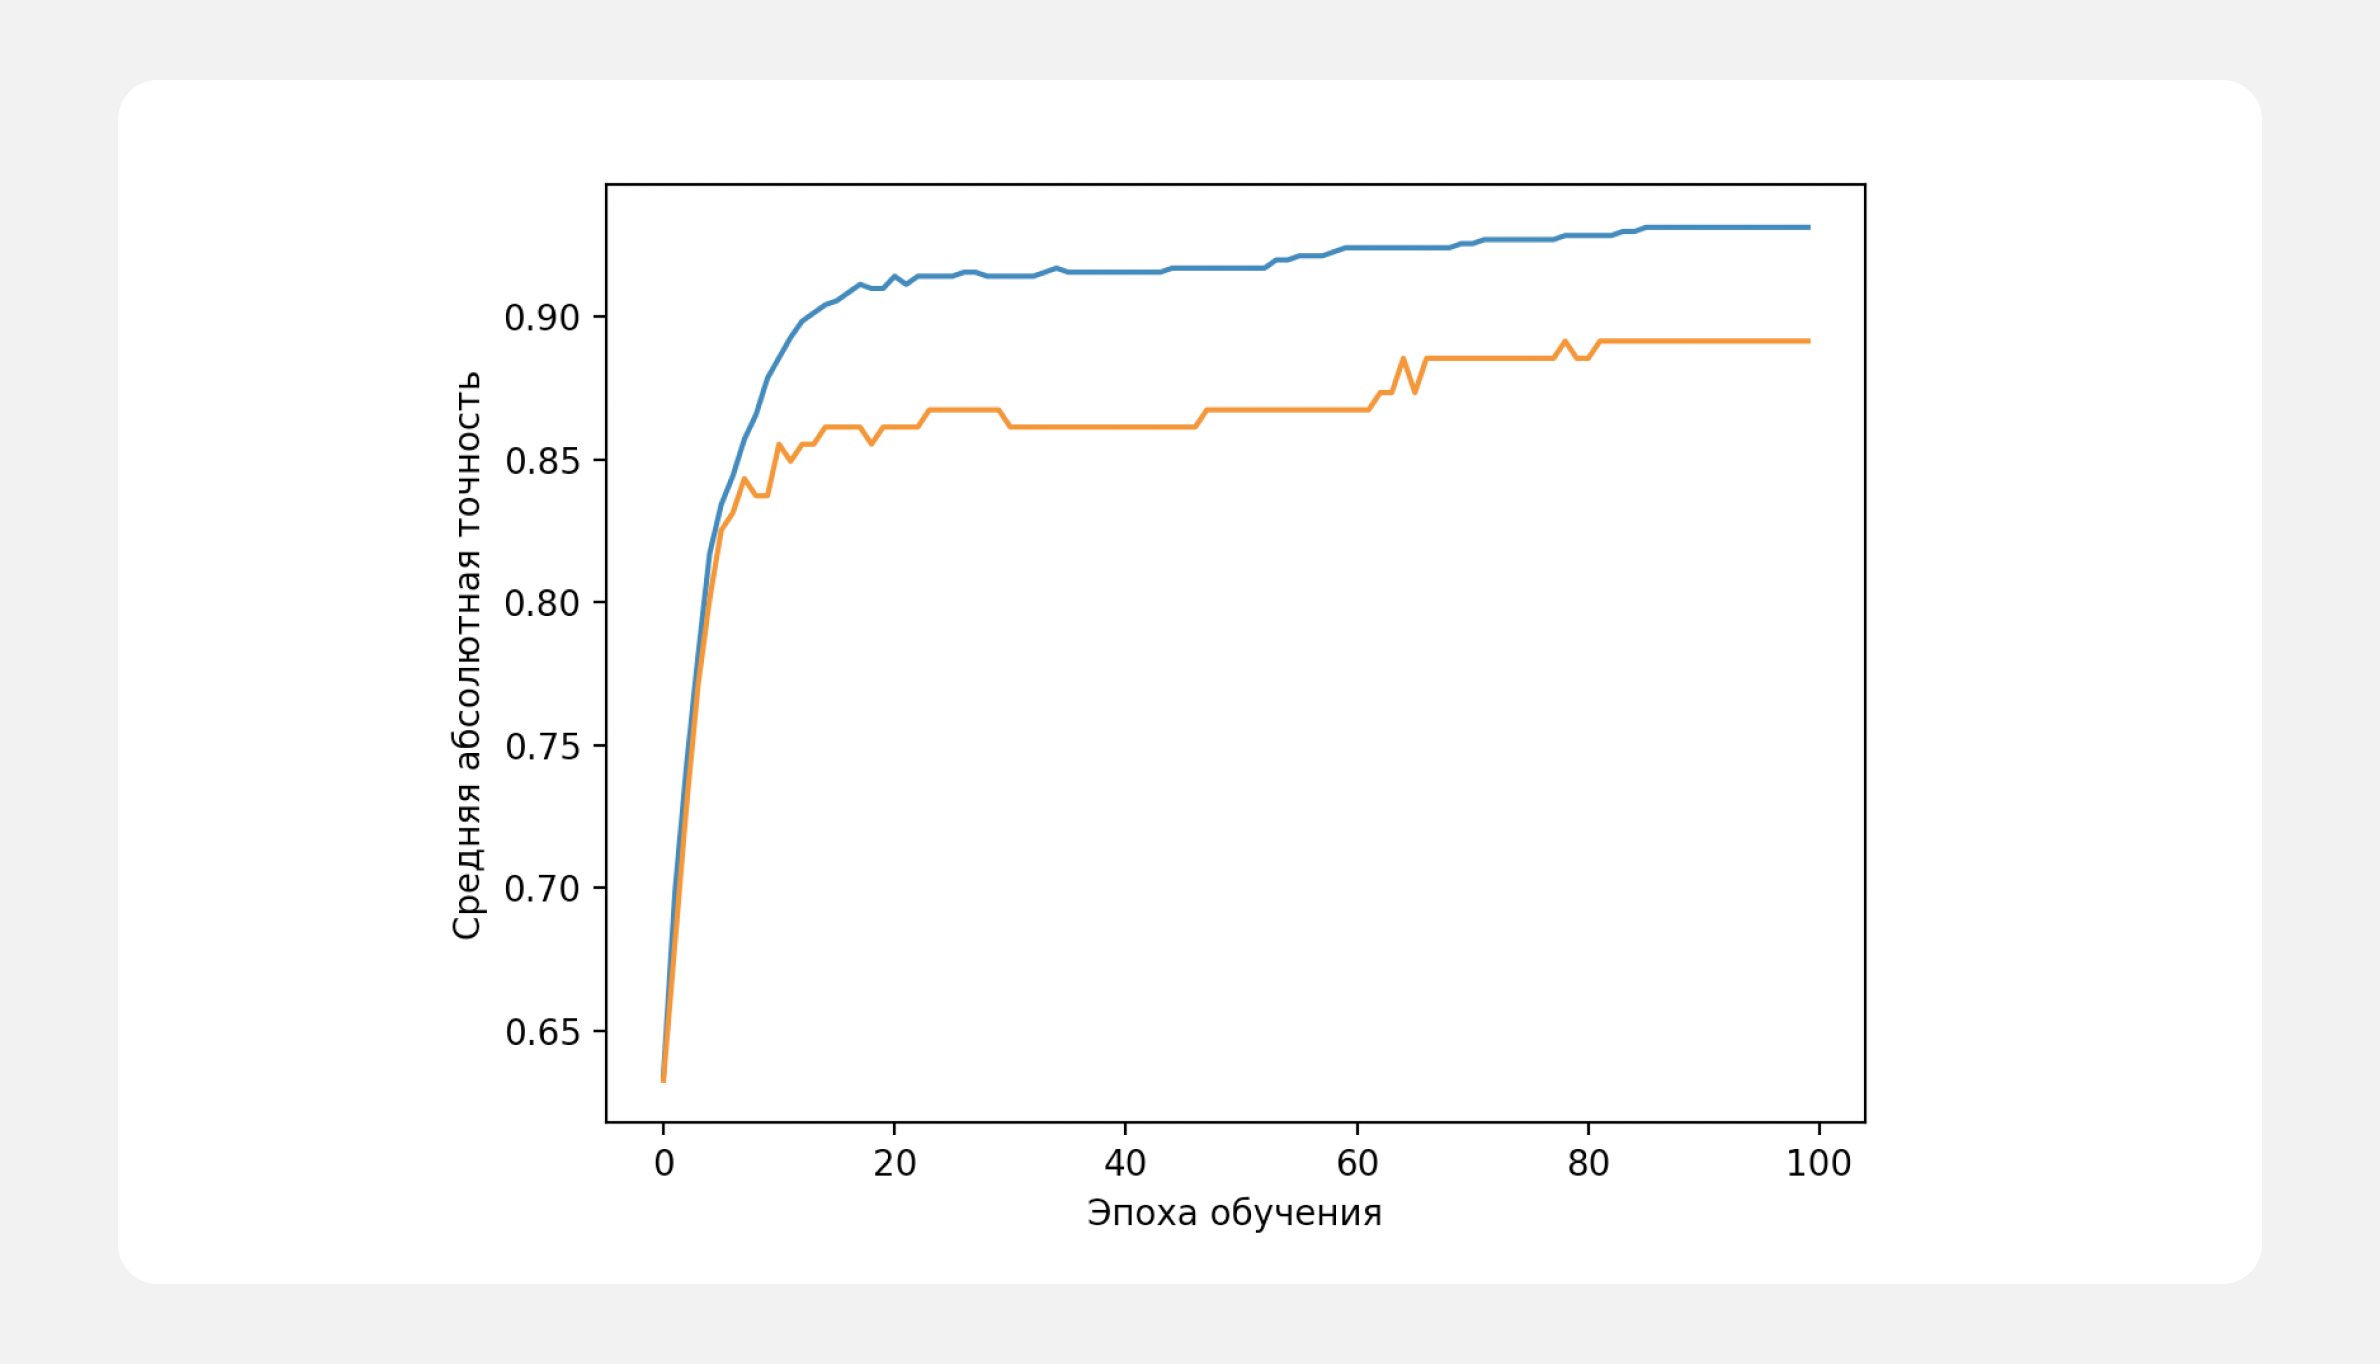 Синий график — точность предсказаний на обучающей выборке, оранжевый — точность предсказаний на проверочной